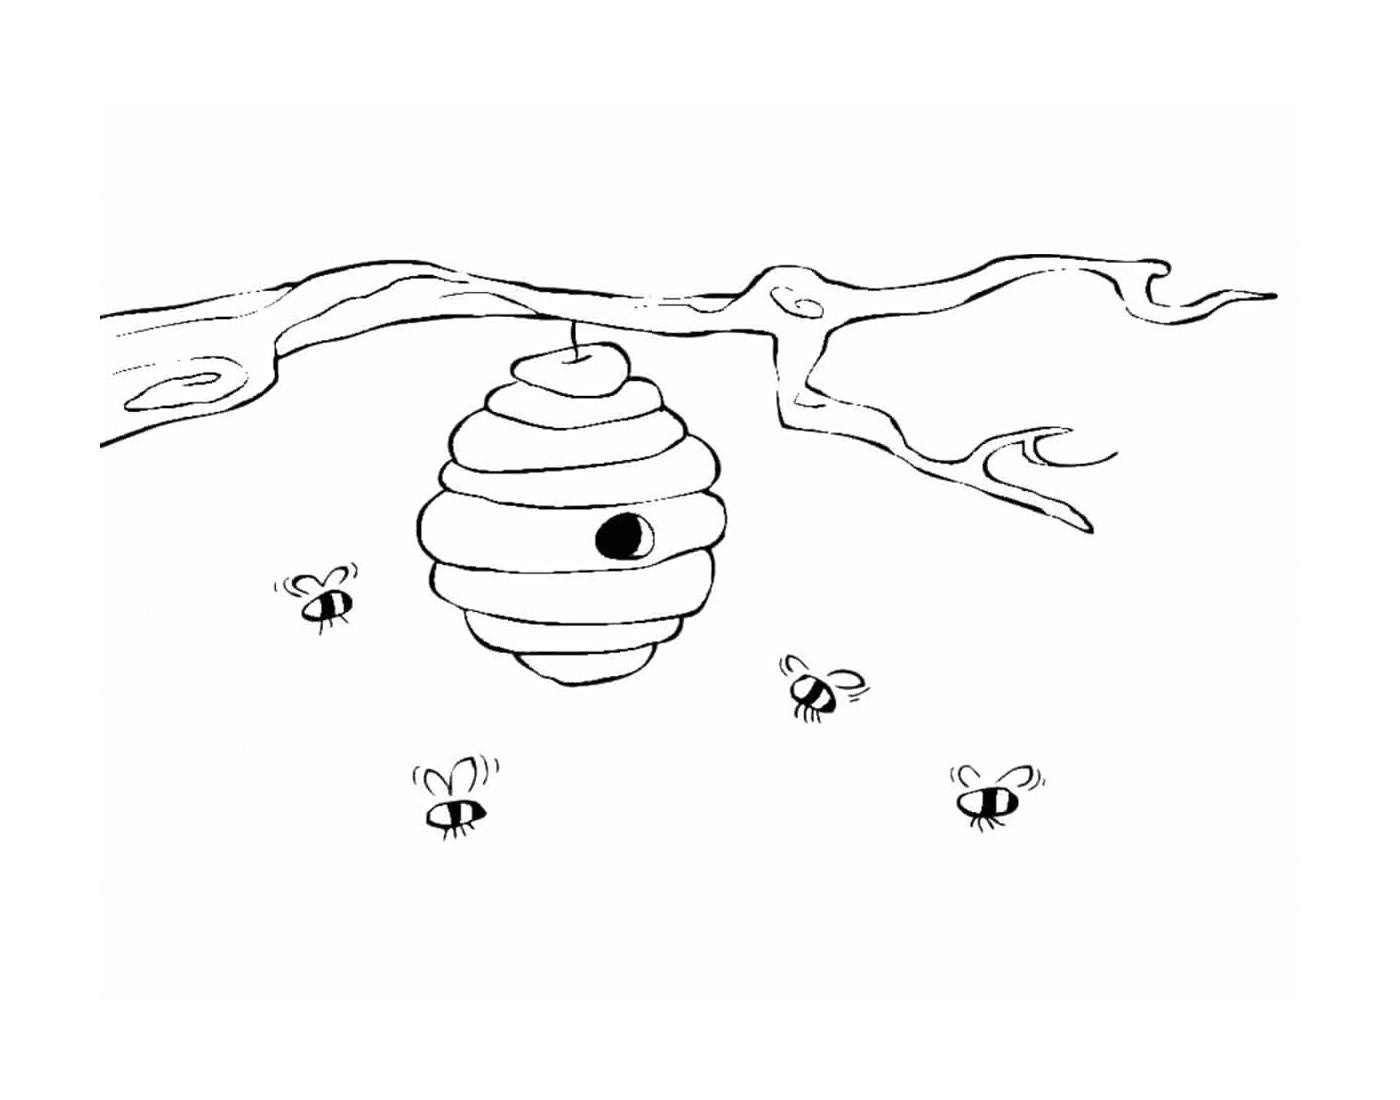  Habitat natural de abelha 